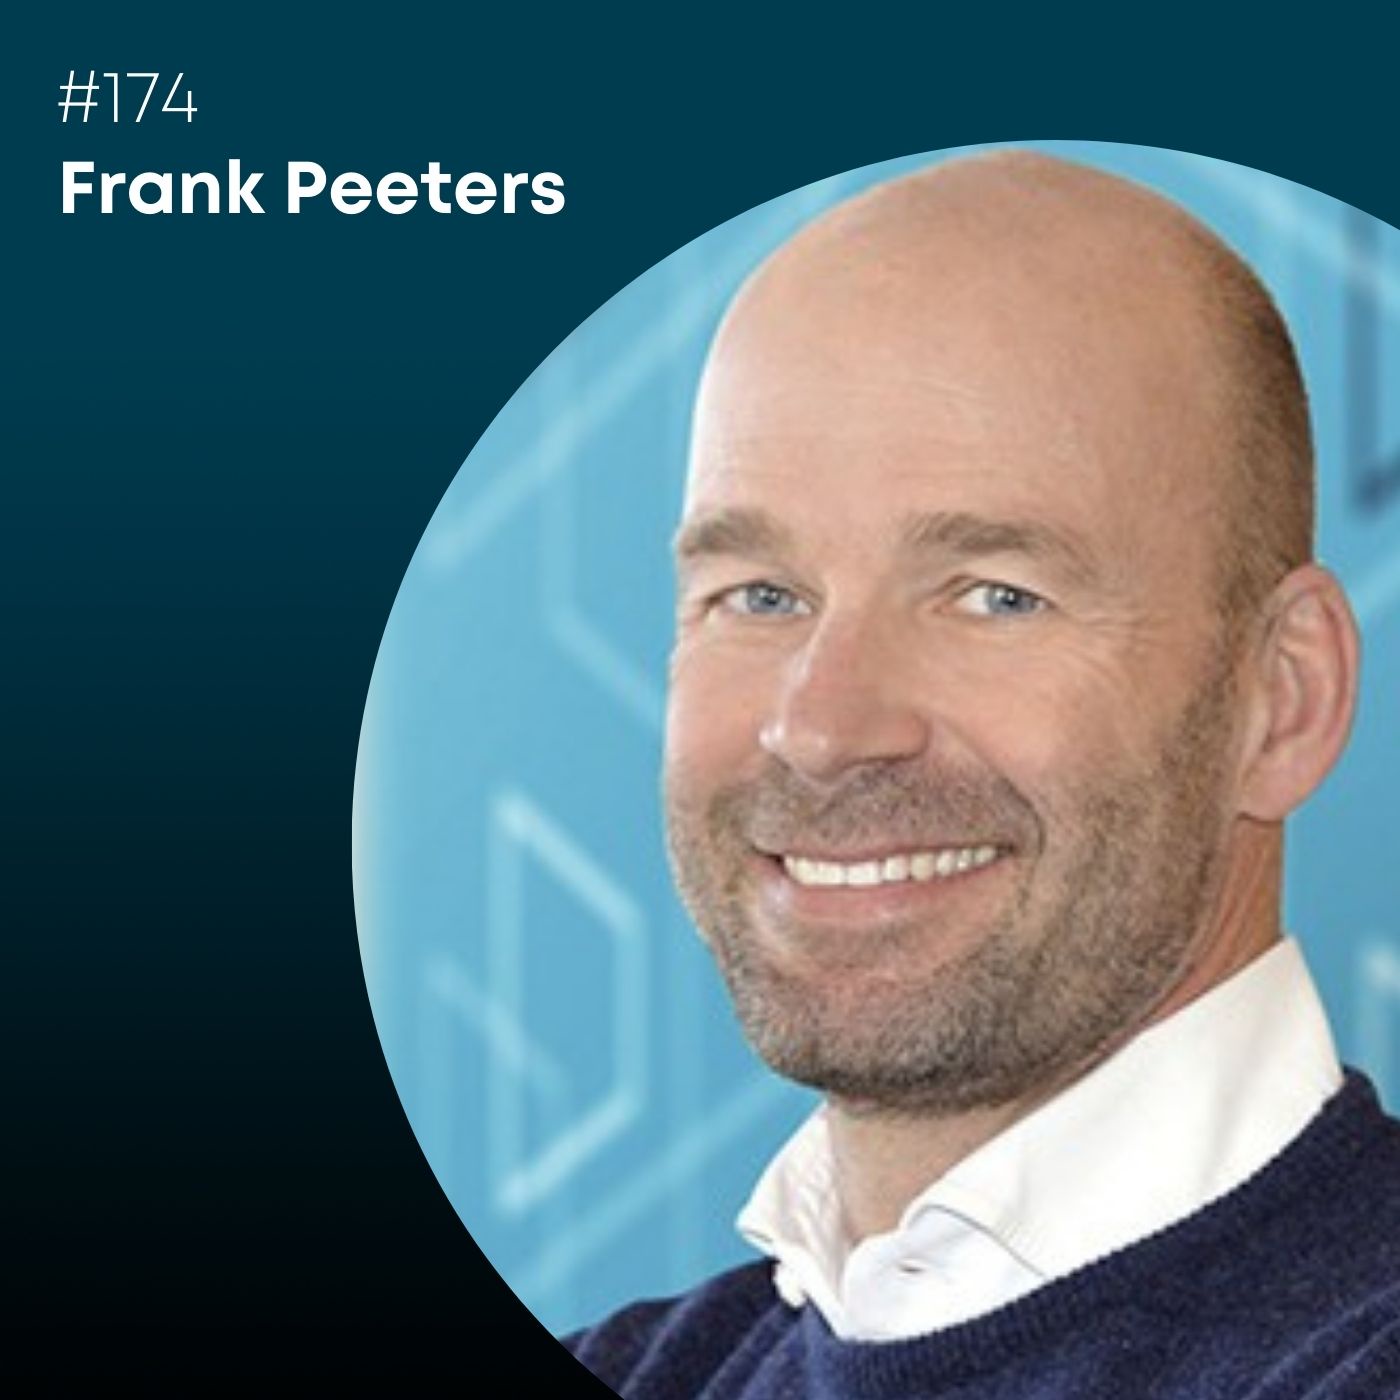 Folge 174: Frank Peeters, wie verändert Digitalisierung die Wissenschaft?